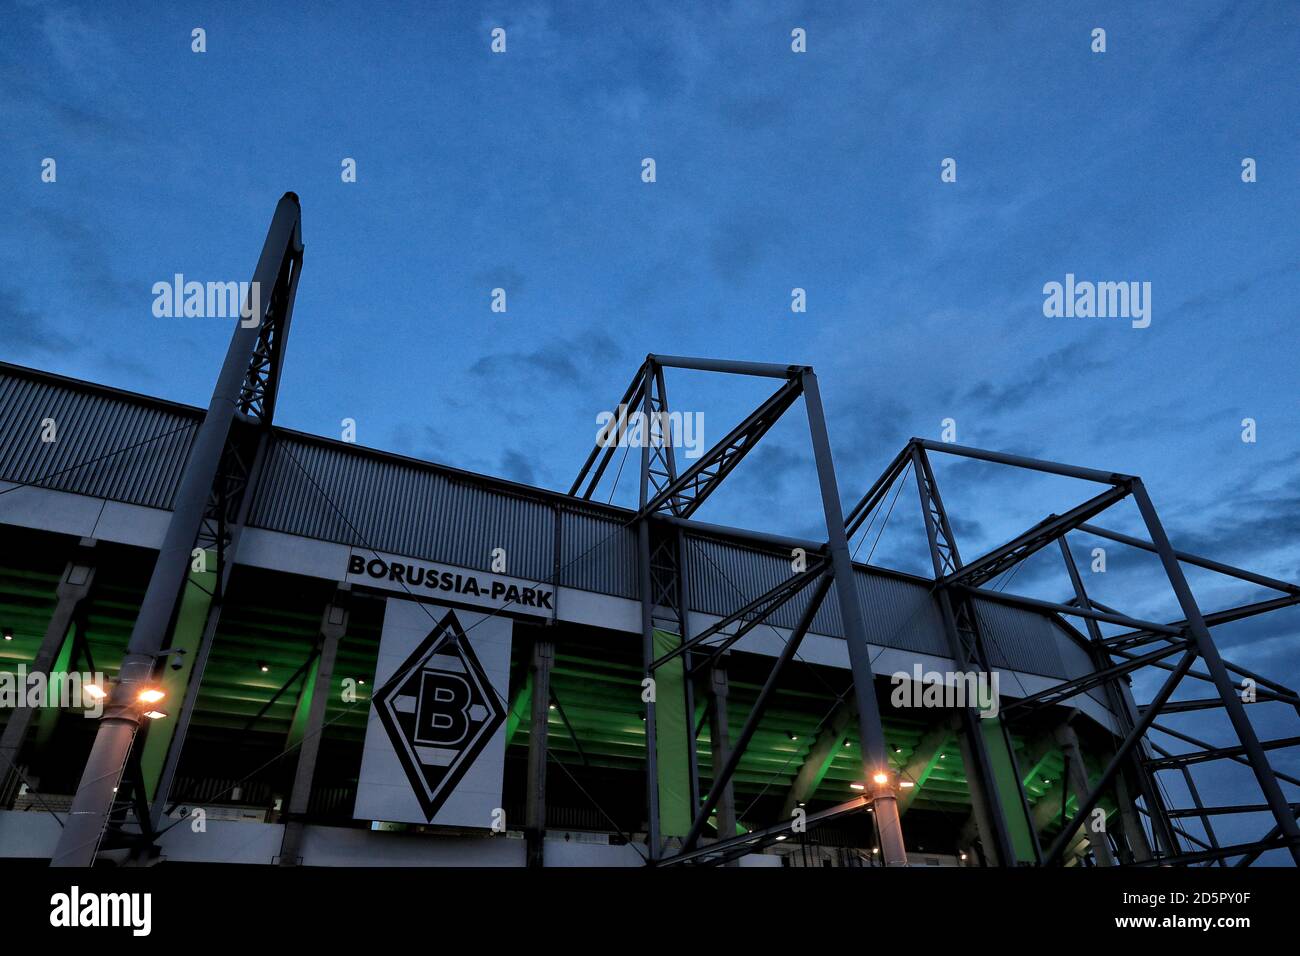 A general view of Borussia Park, home of Borussia Monchengladbach Stock Photo